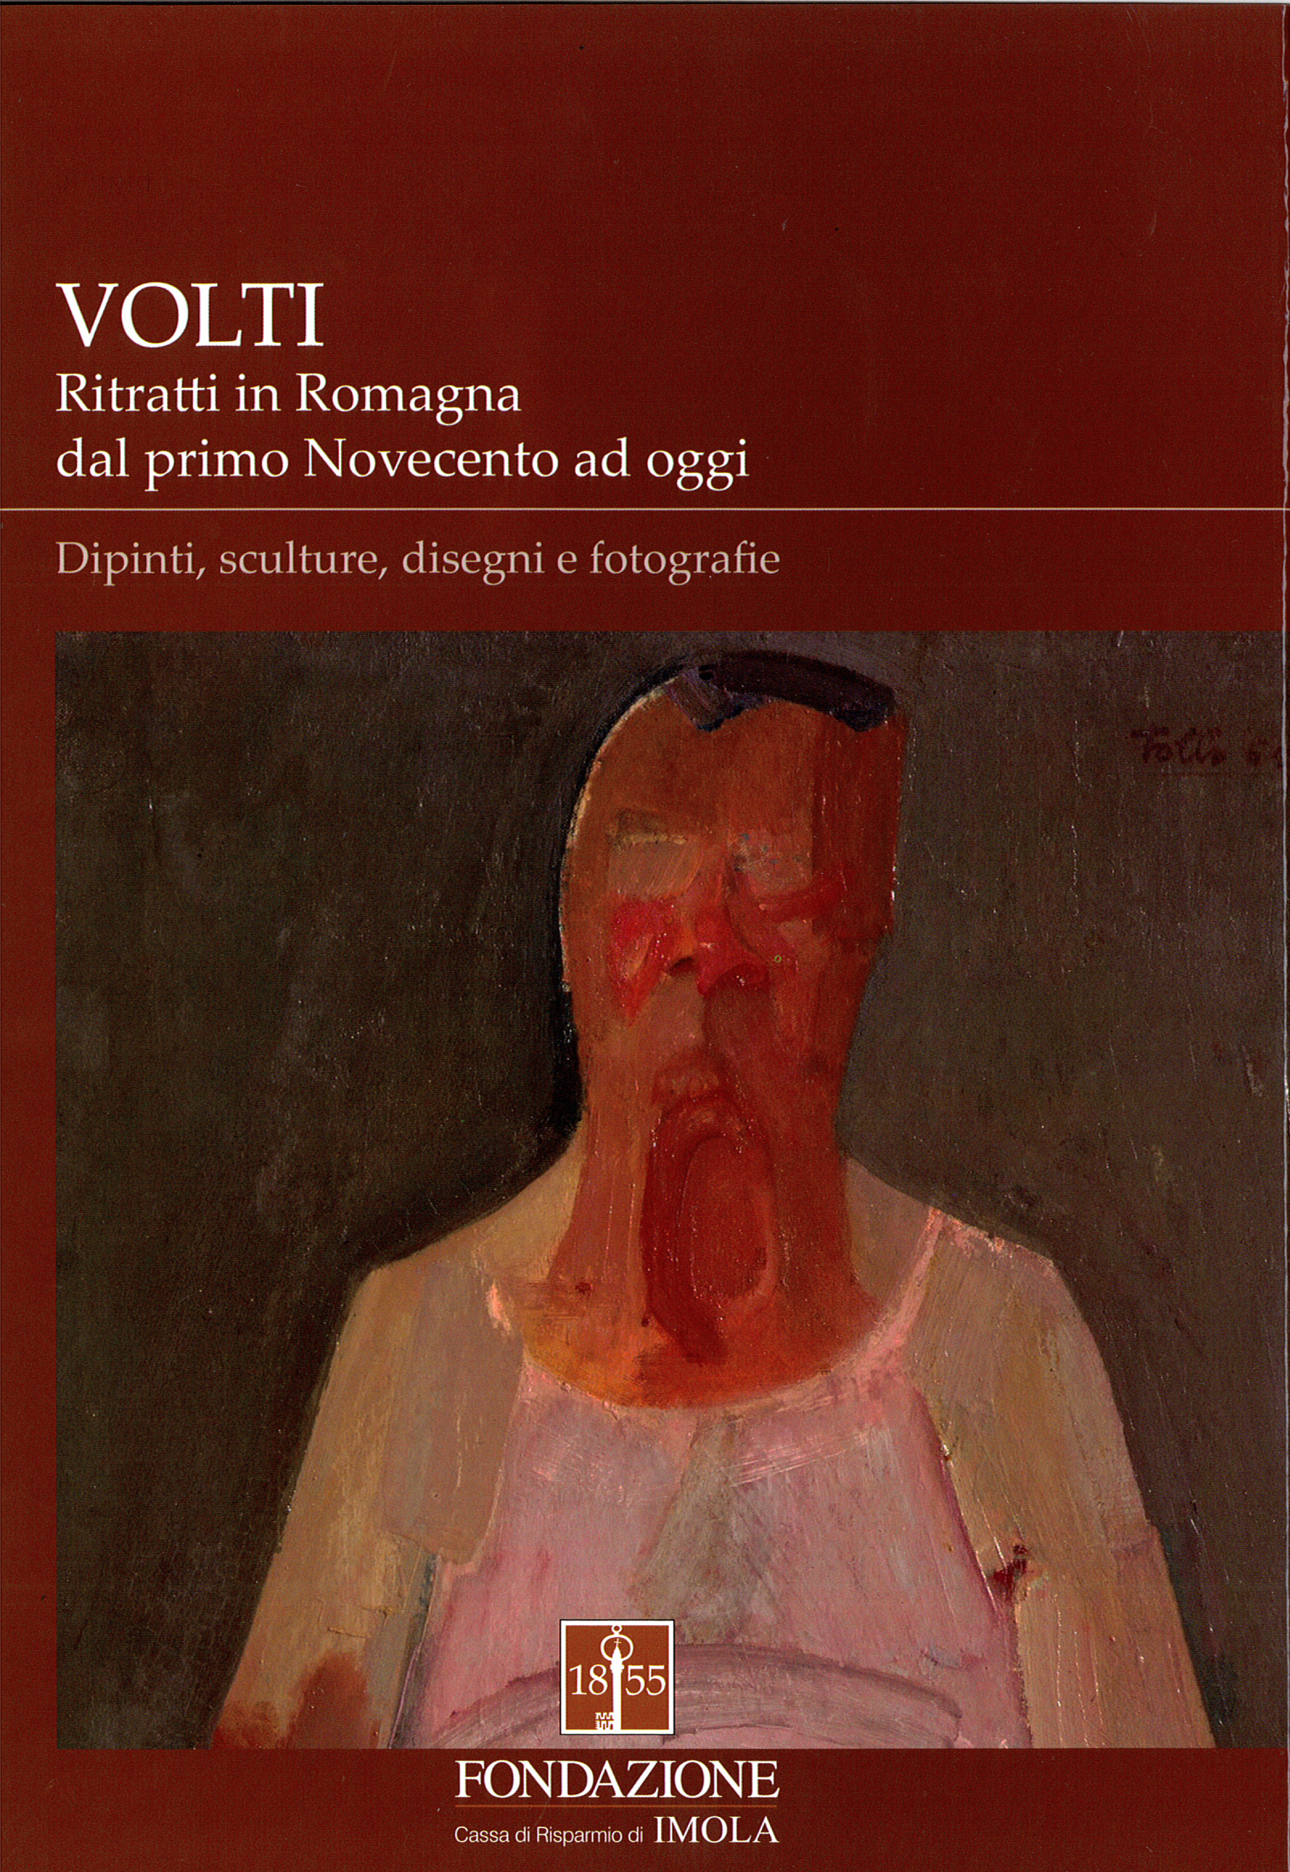 Volti. Ritratti in Romagna dal primo Novecento ad oggi, collana Libri di Tracce, editrice la Mandragora, 2016